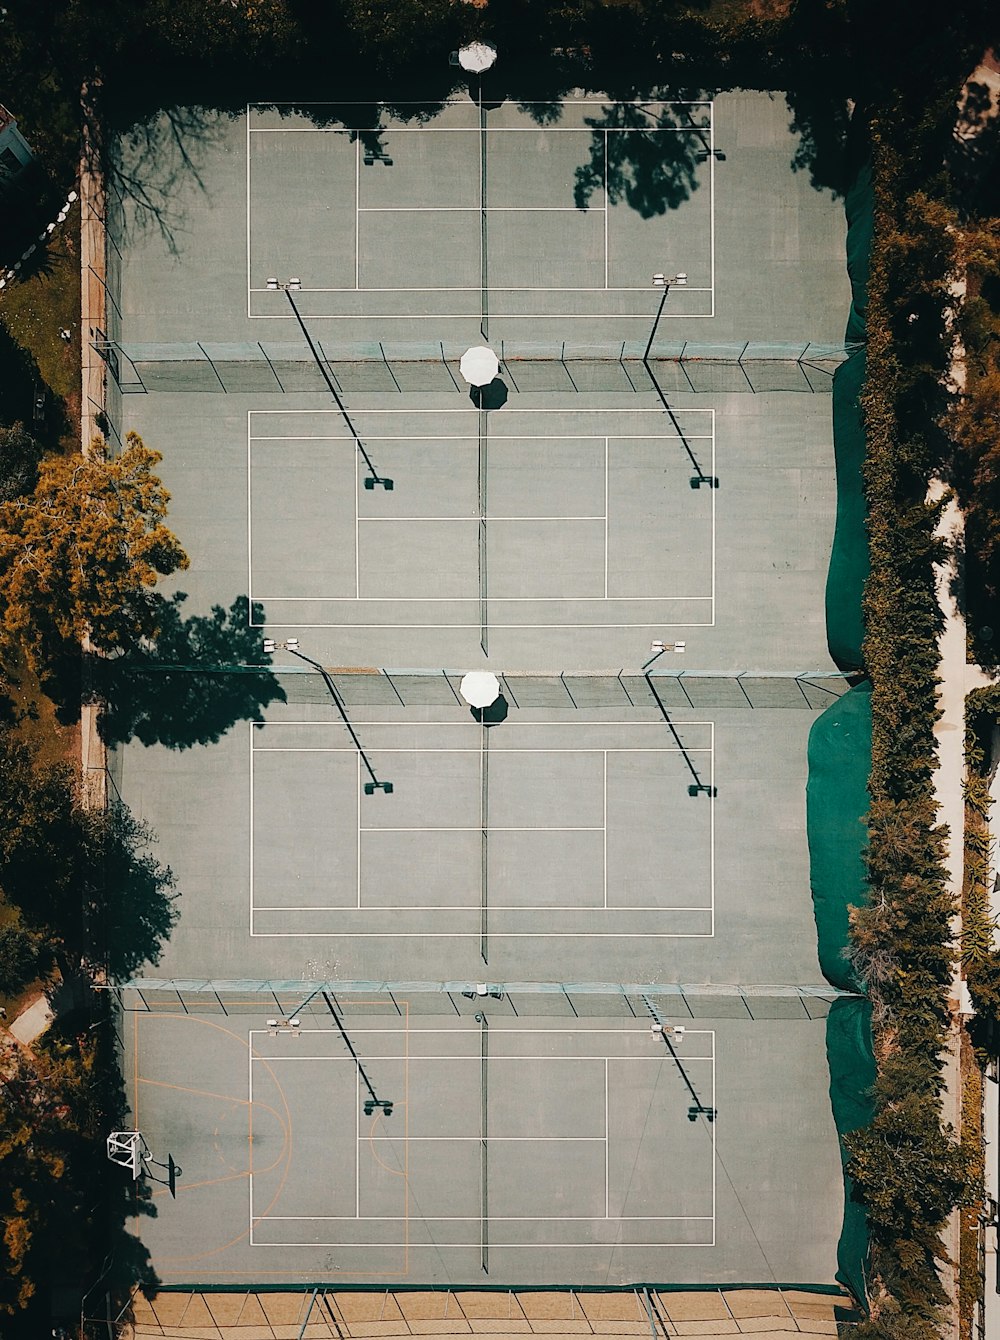 Luftaufnahme des von Orangenbäumen umgebenen Spielfeldes